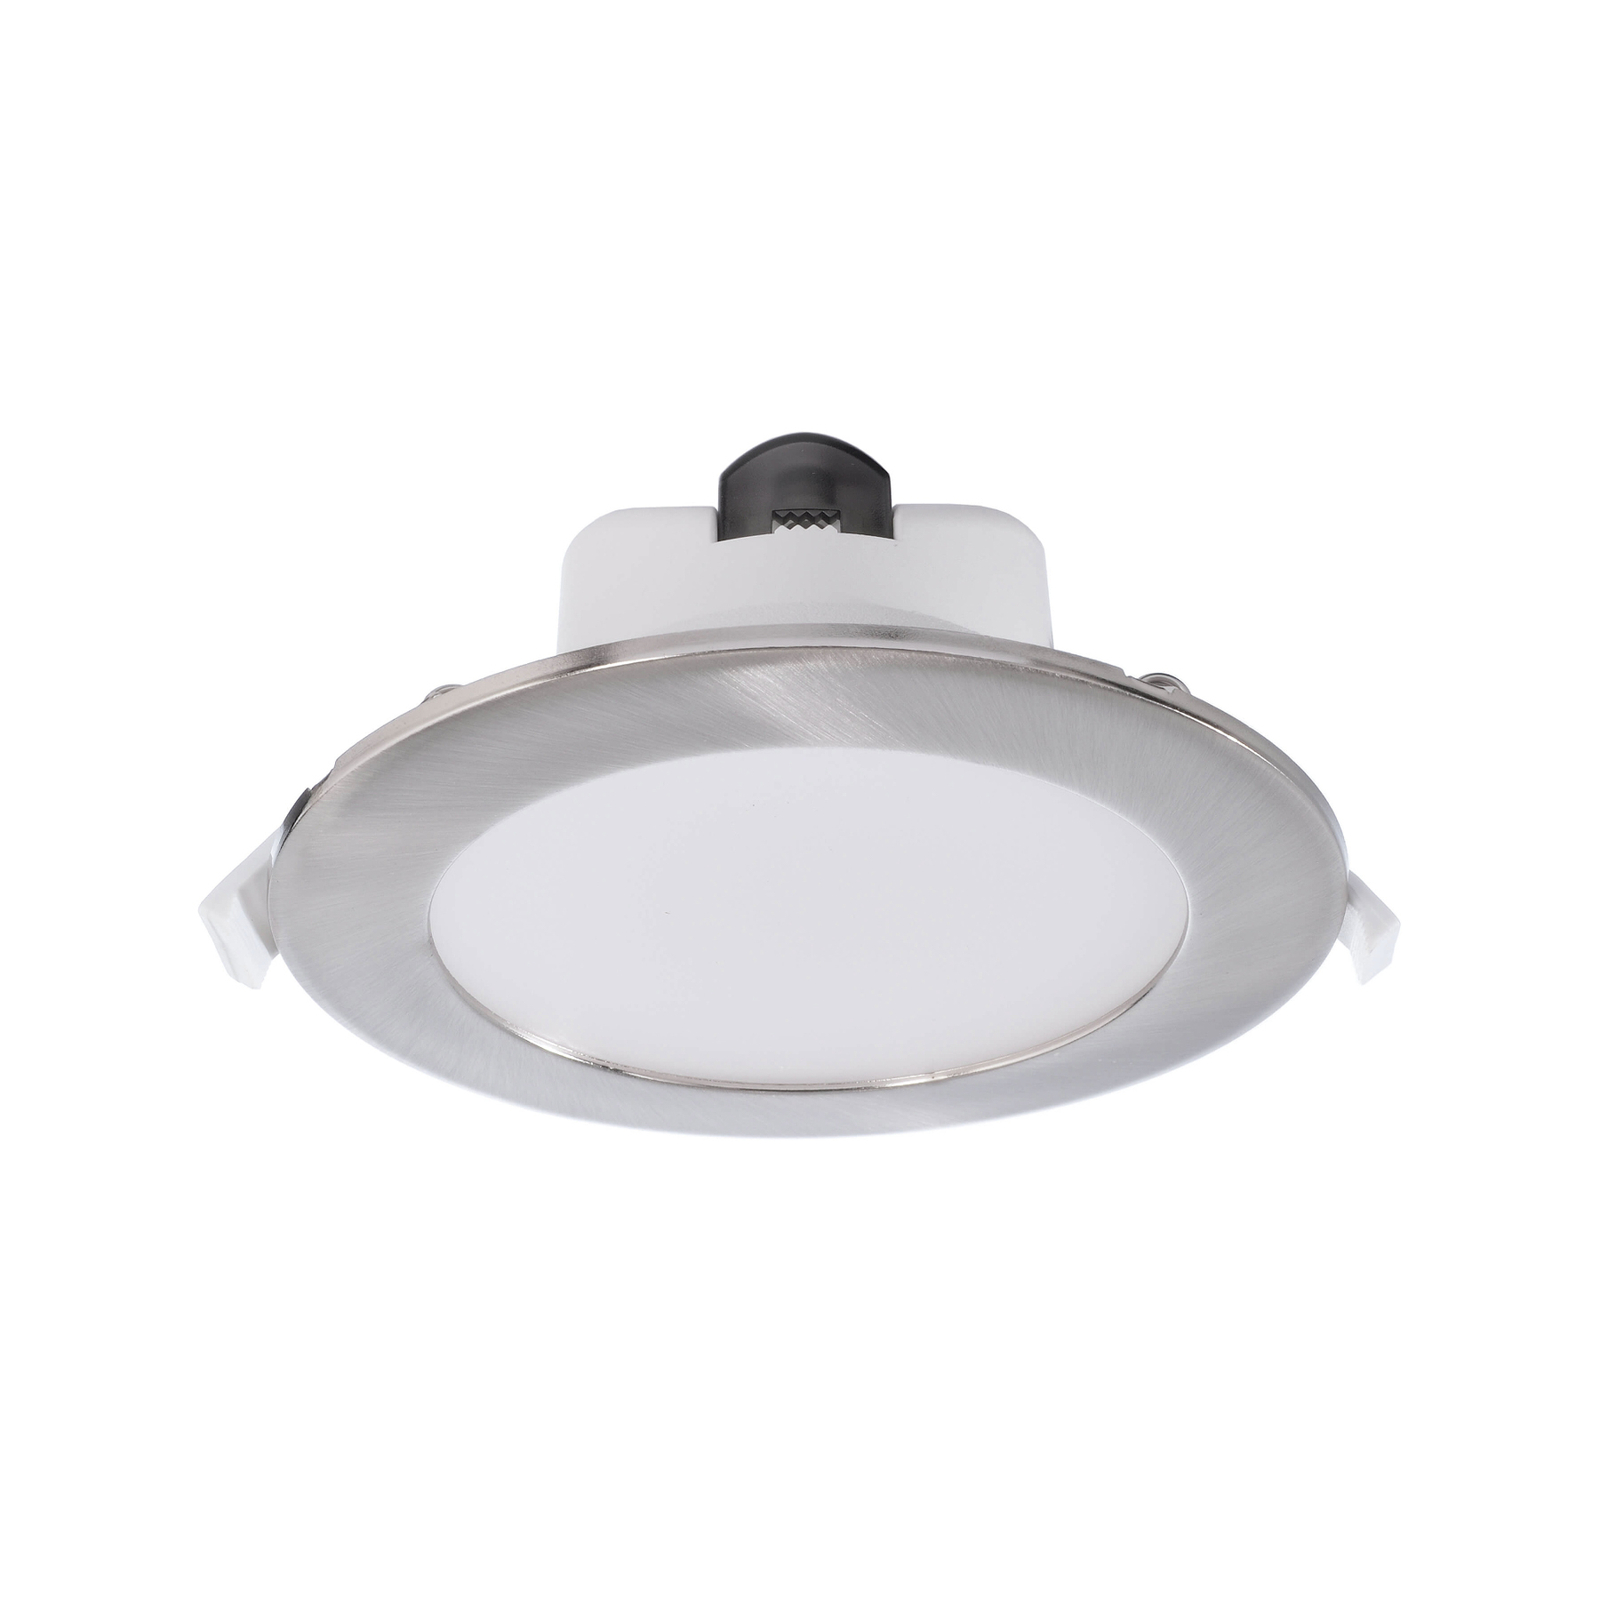 Acrux 145 LED-es süllyesztett lámpa, fehér, Ø 17,4 cm